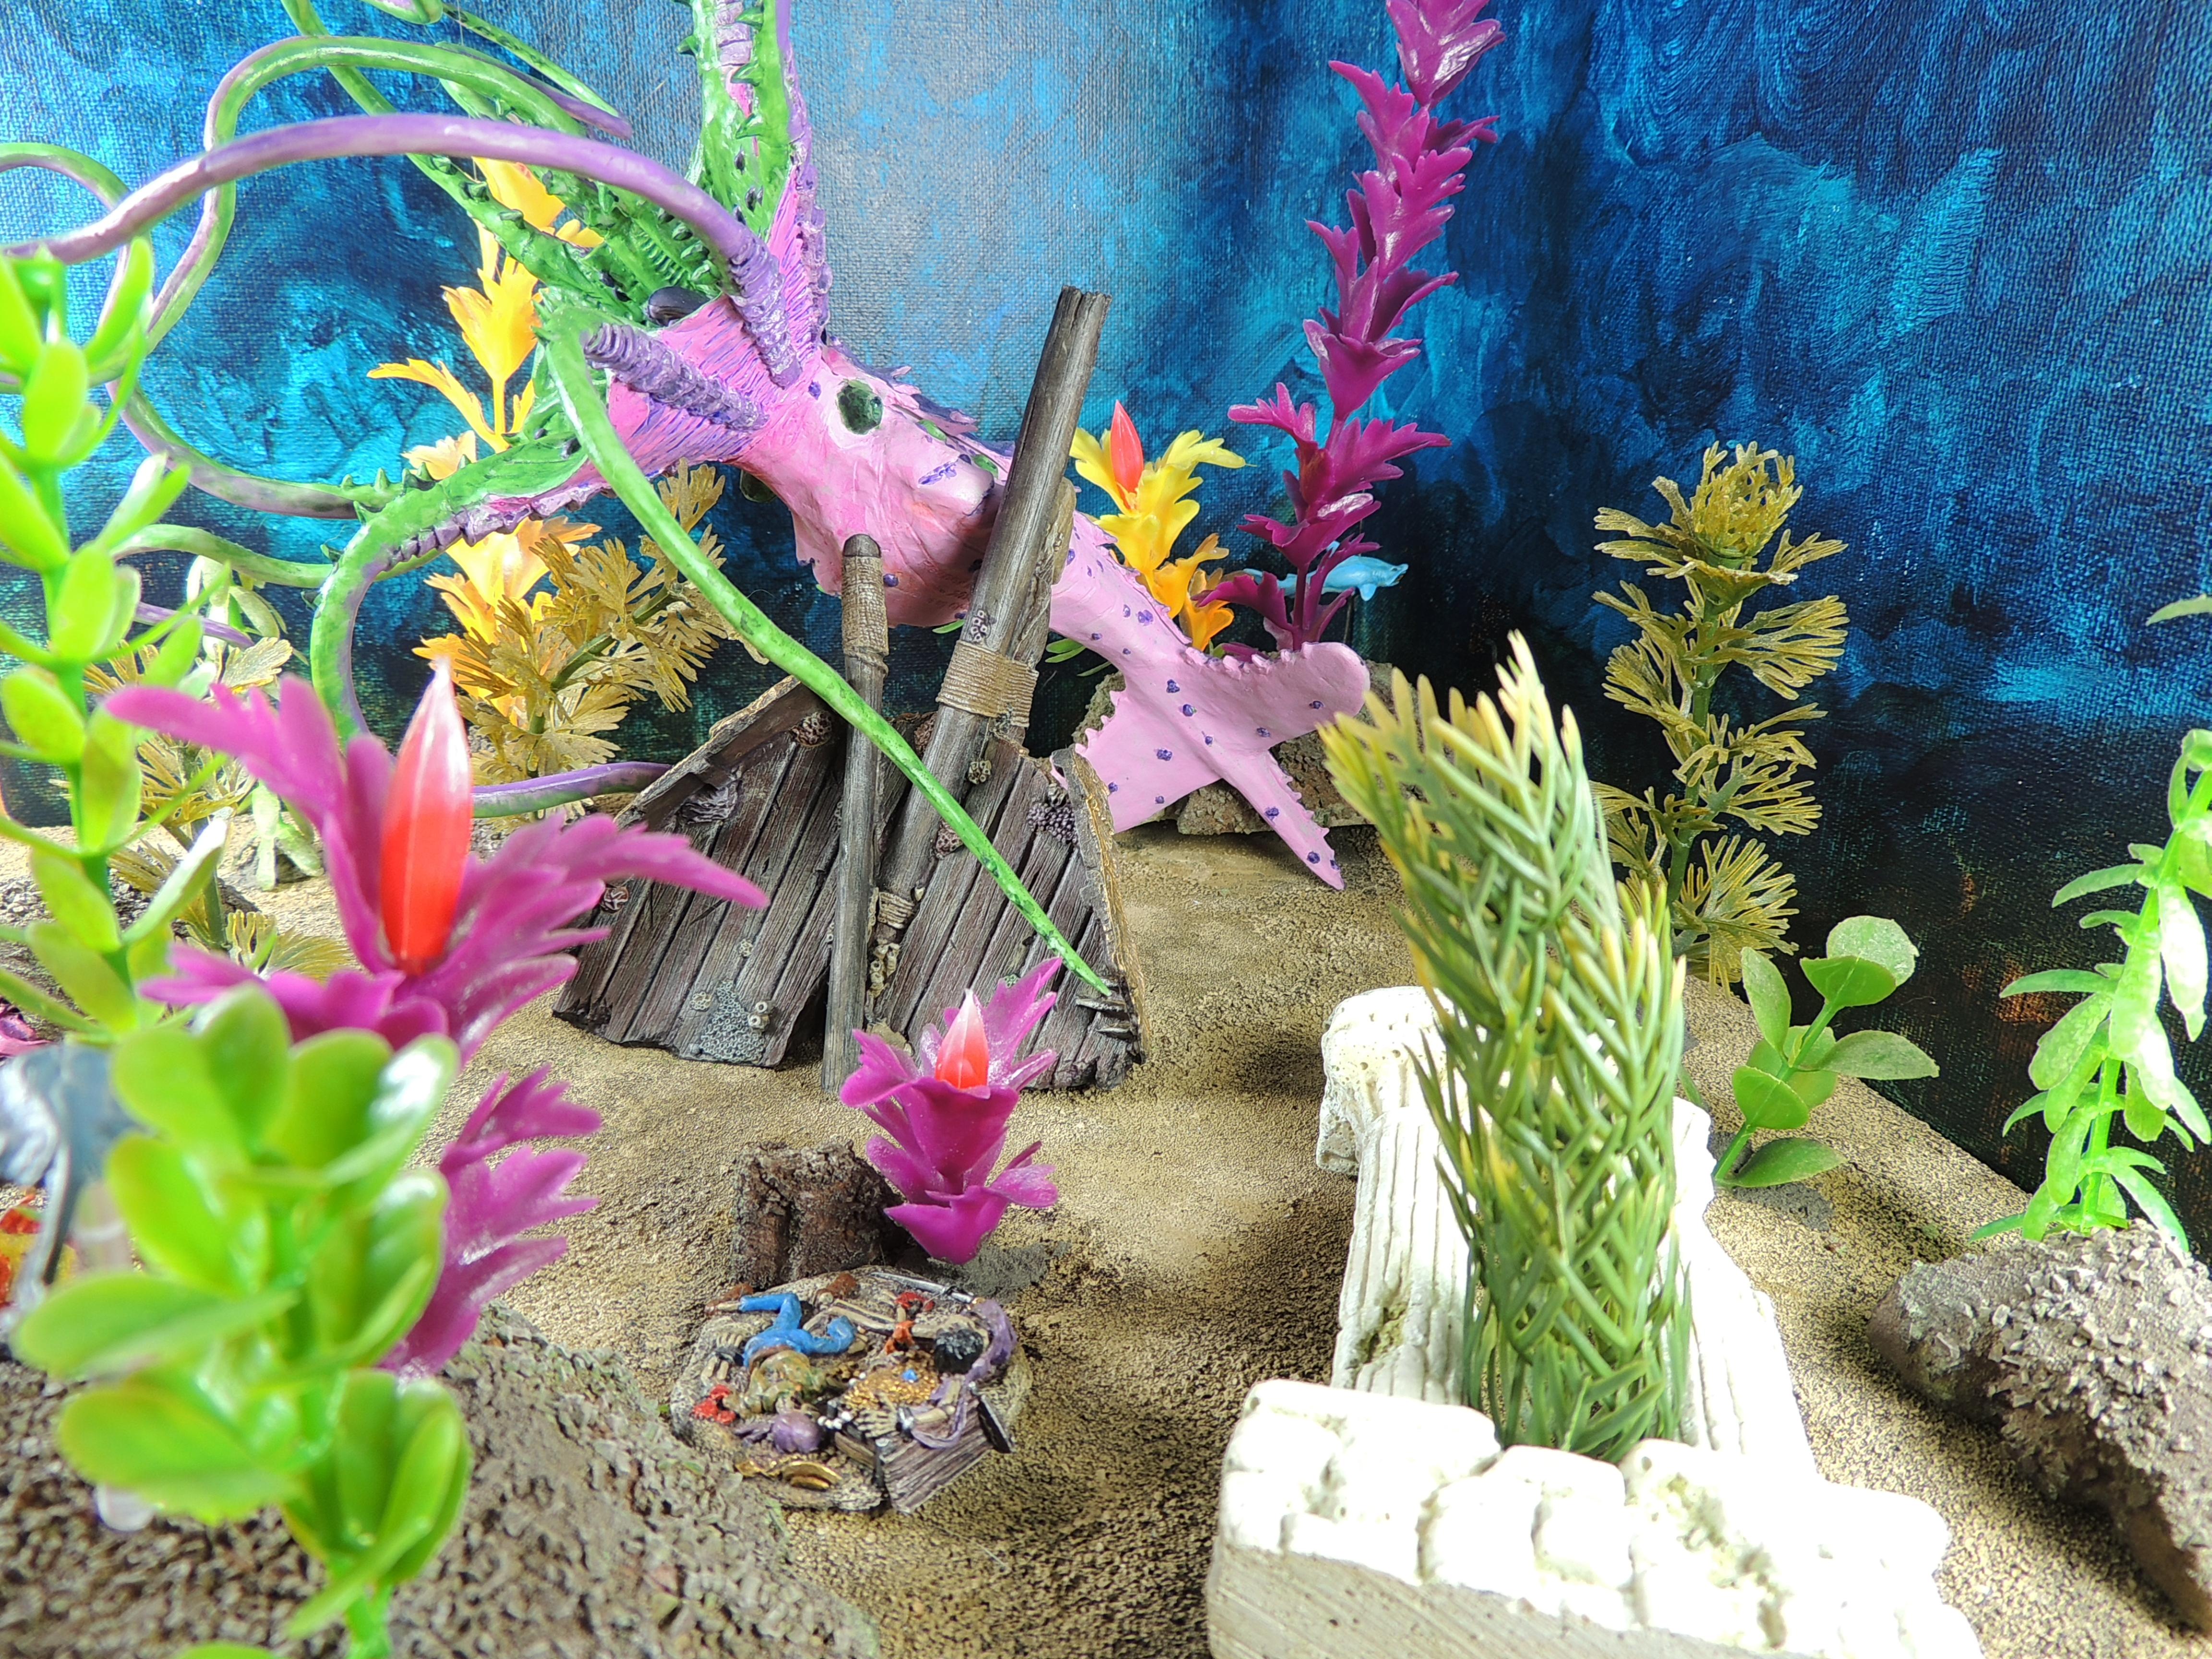 Kraken Diorama